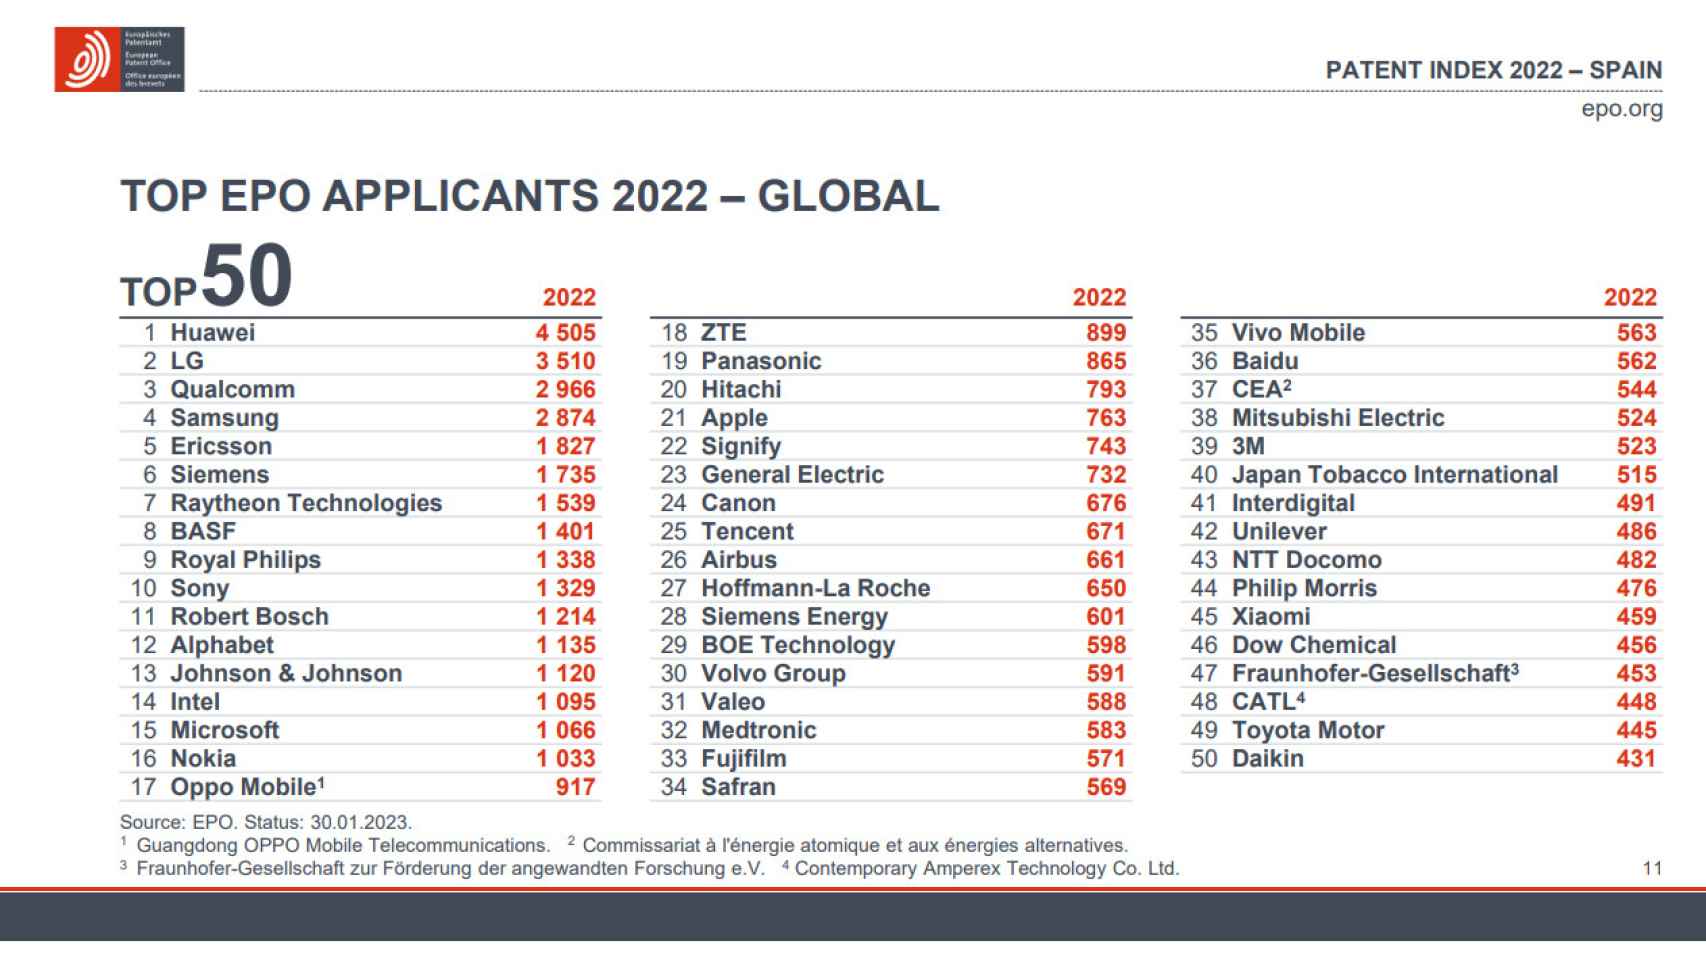 Las cincuenta empresas que más patentes registraron en Europa durante 2022.